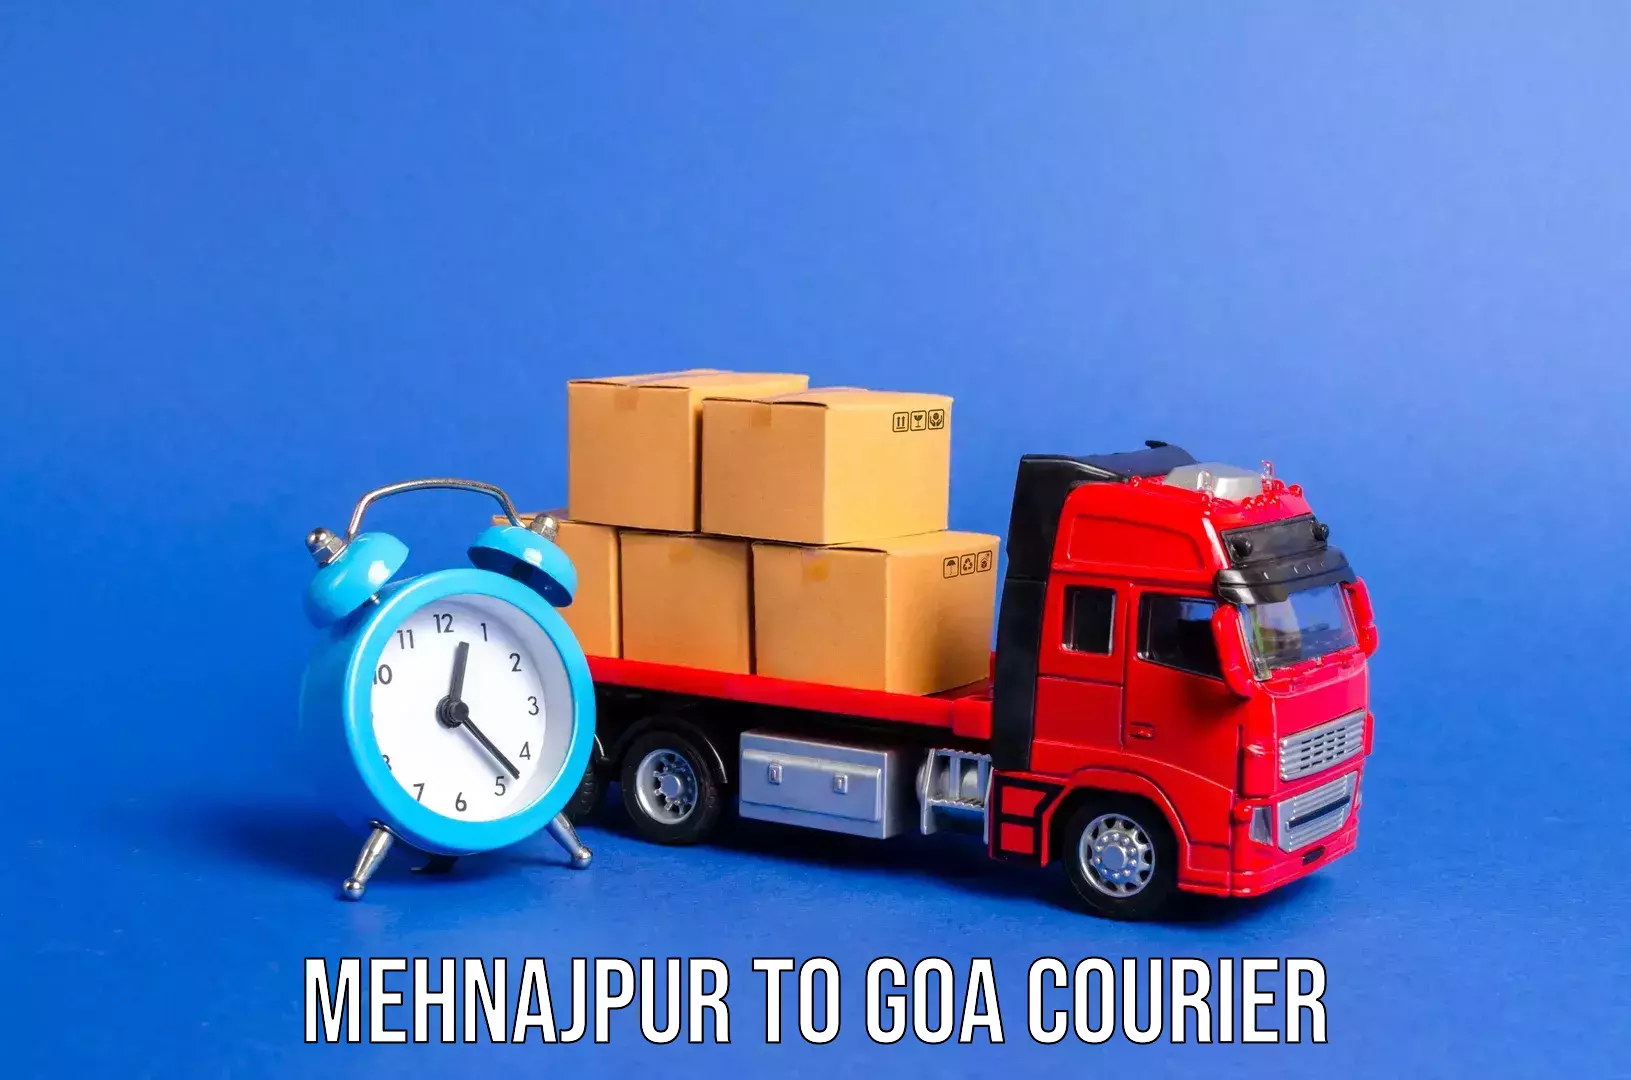 Door-to-door baggage service Mehnajpur to Goa